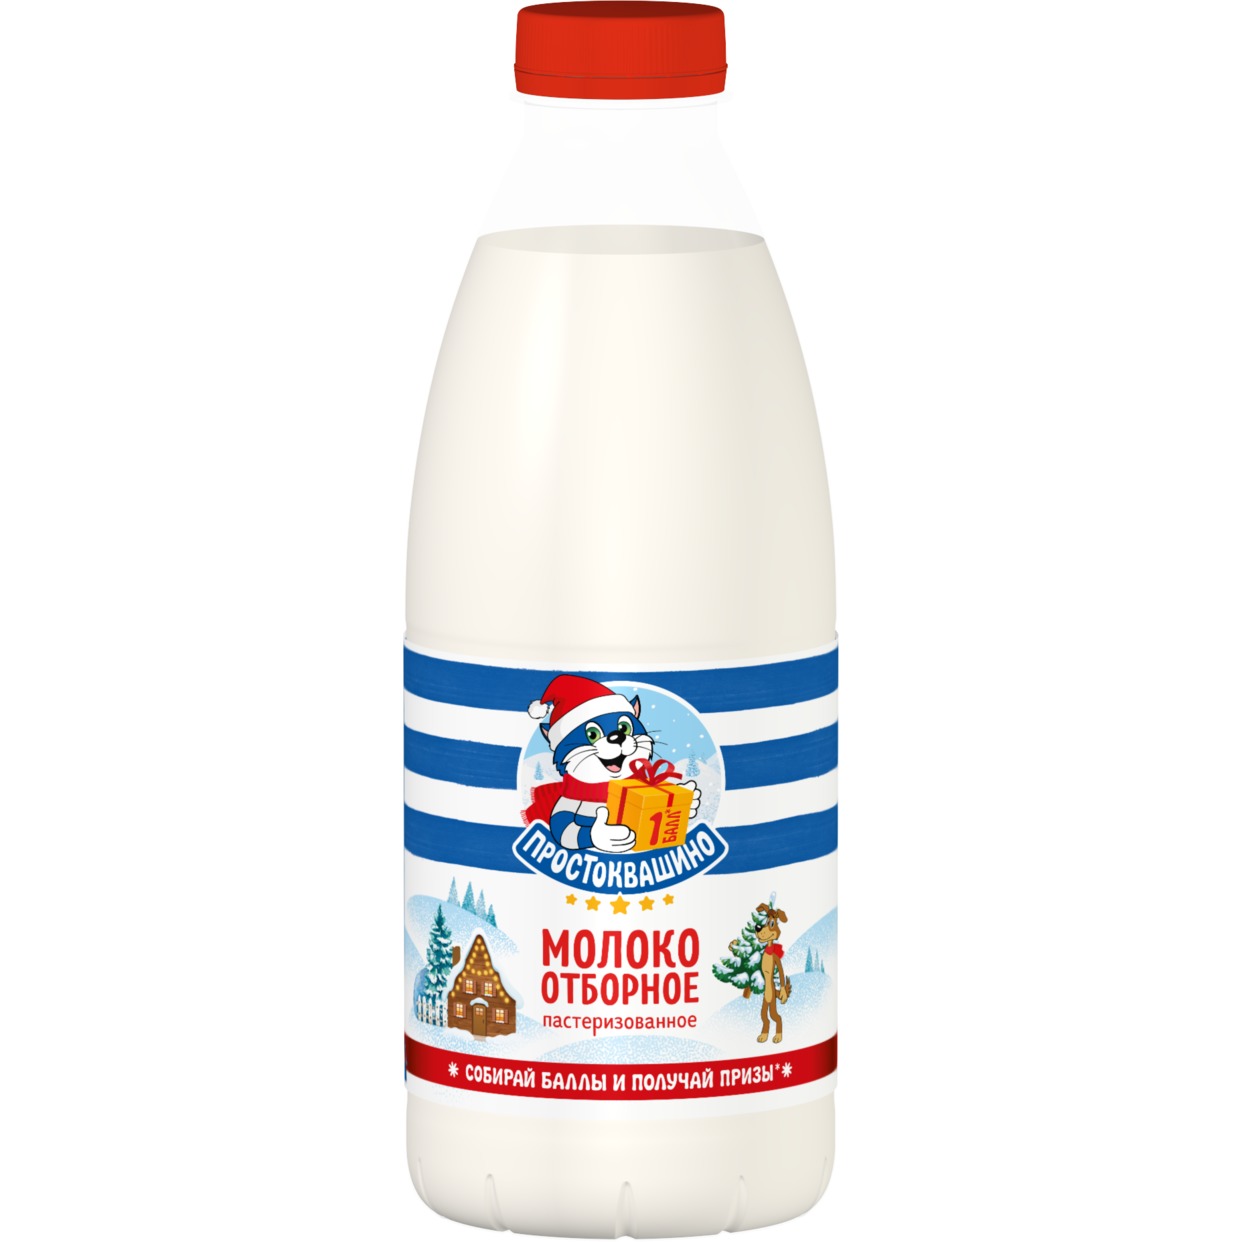 Молоко Простоквашино, пастеризованное, отборное, 3,4-4,5%, 930 мл по акции в Пятерочке